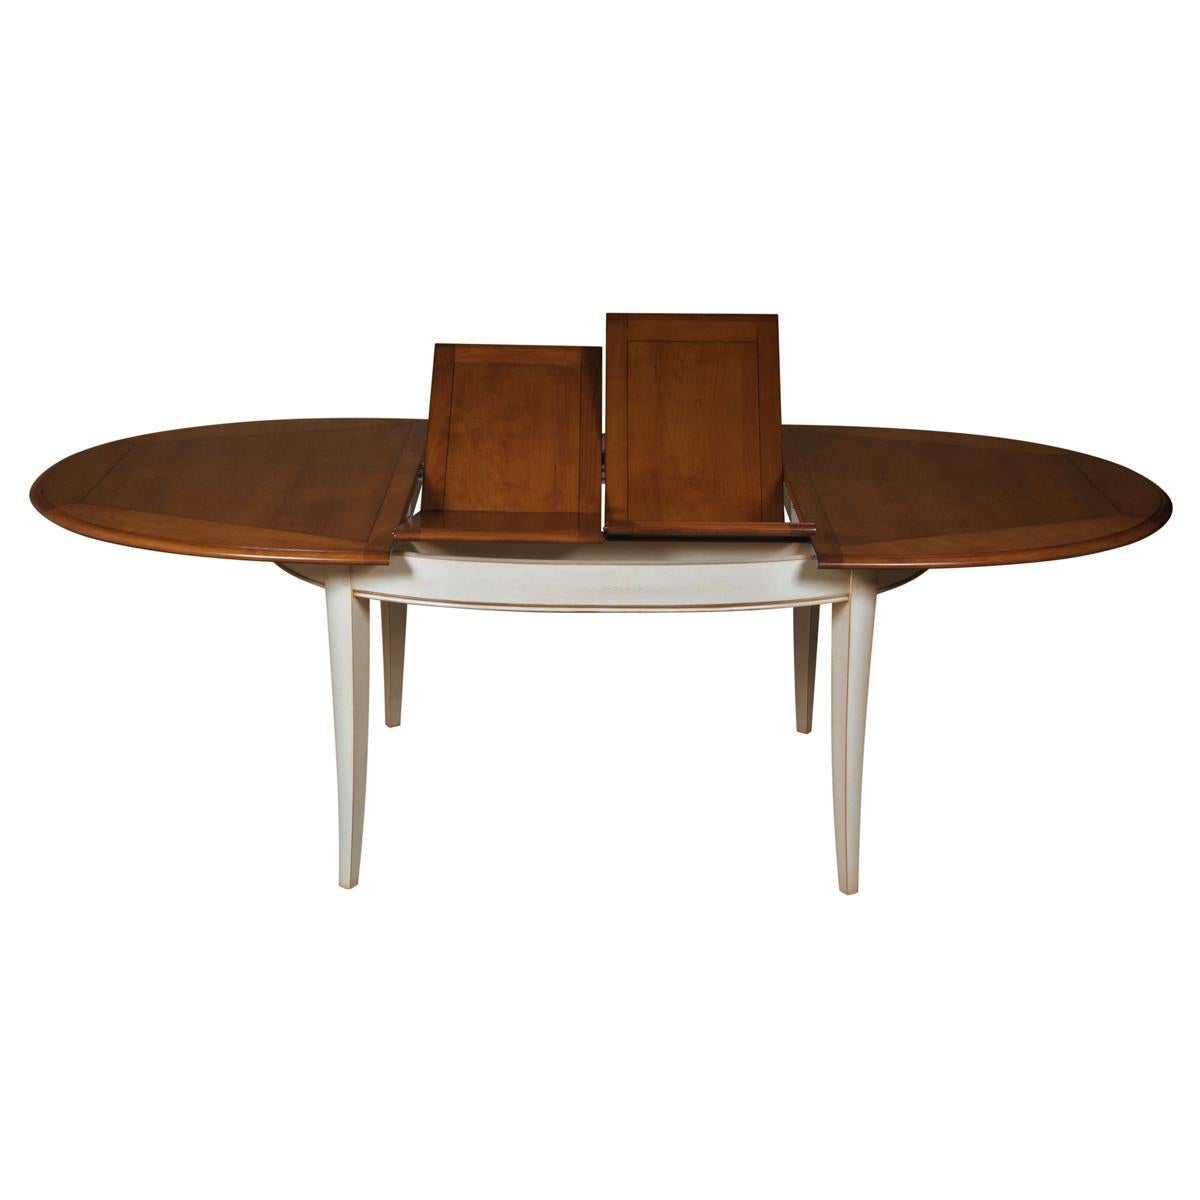 Cette table ovale extensible à 2 feuilles est typique des meubles classiques français et appartient à notre collection TRADITION qui reprend les classiques intemporels du charme de la campagne française.

Les pilastres, les cannelures et les pieds